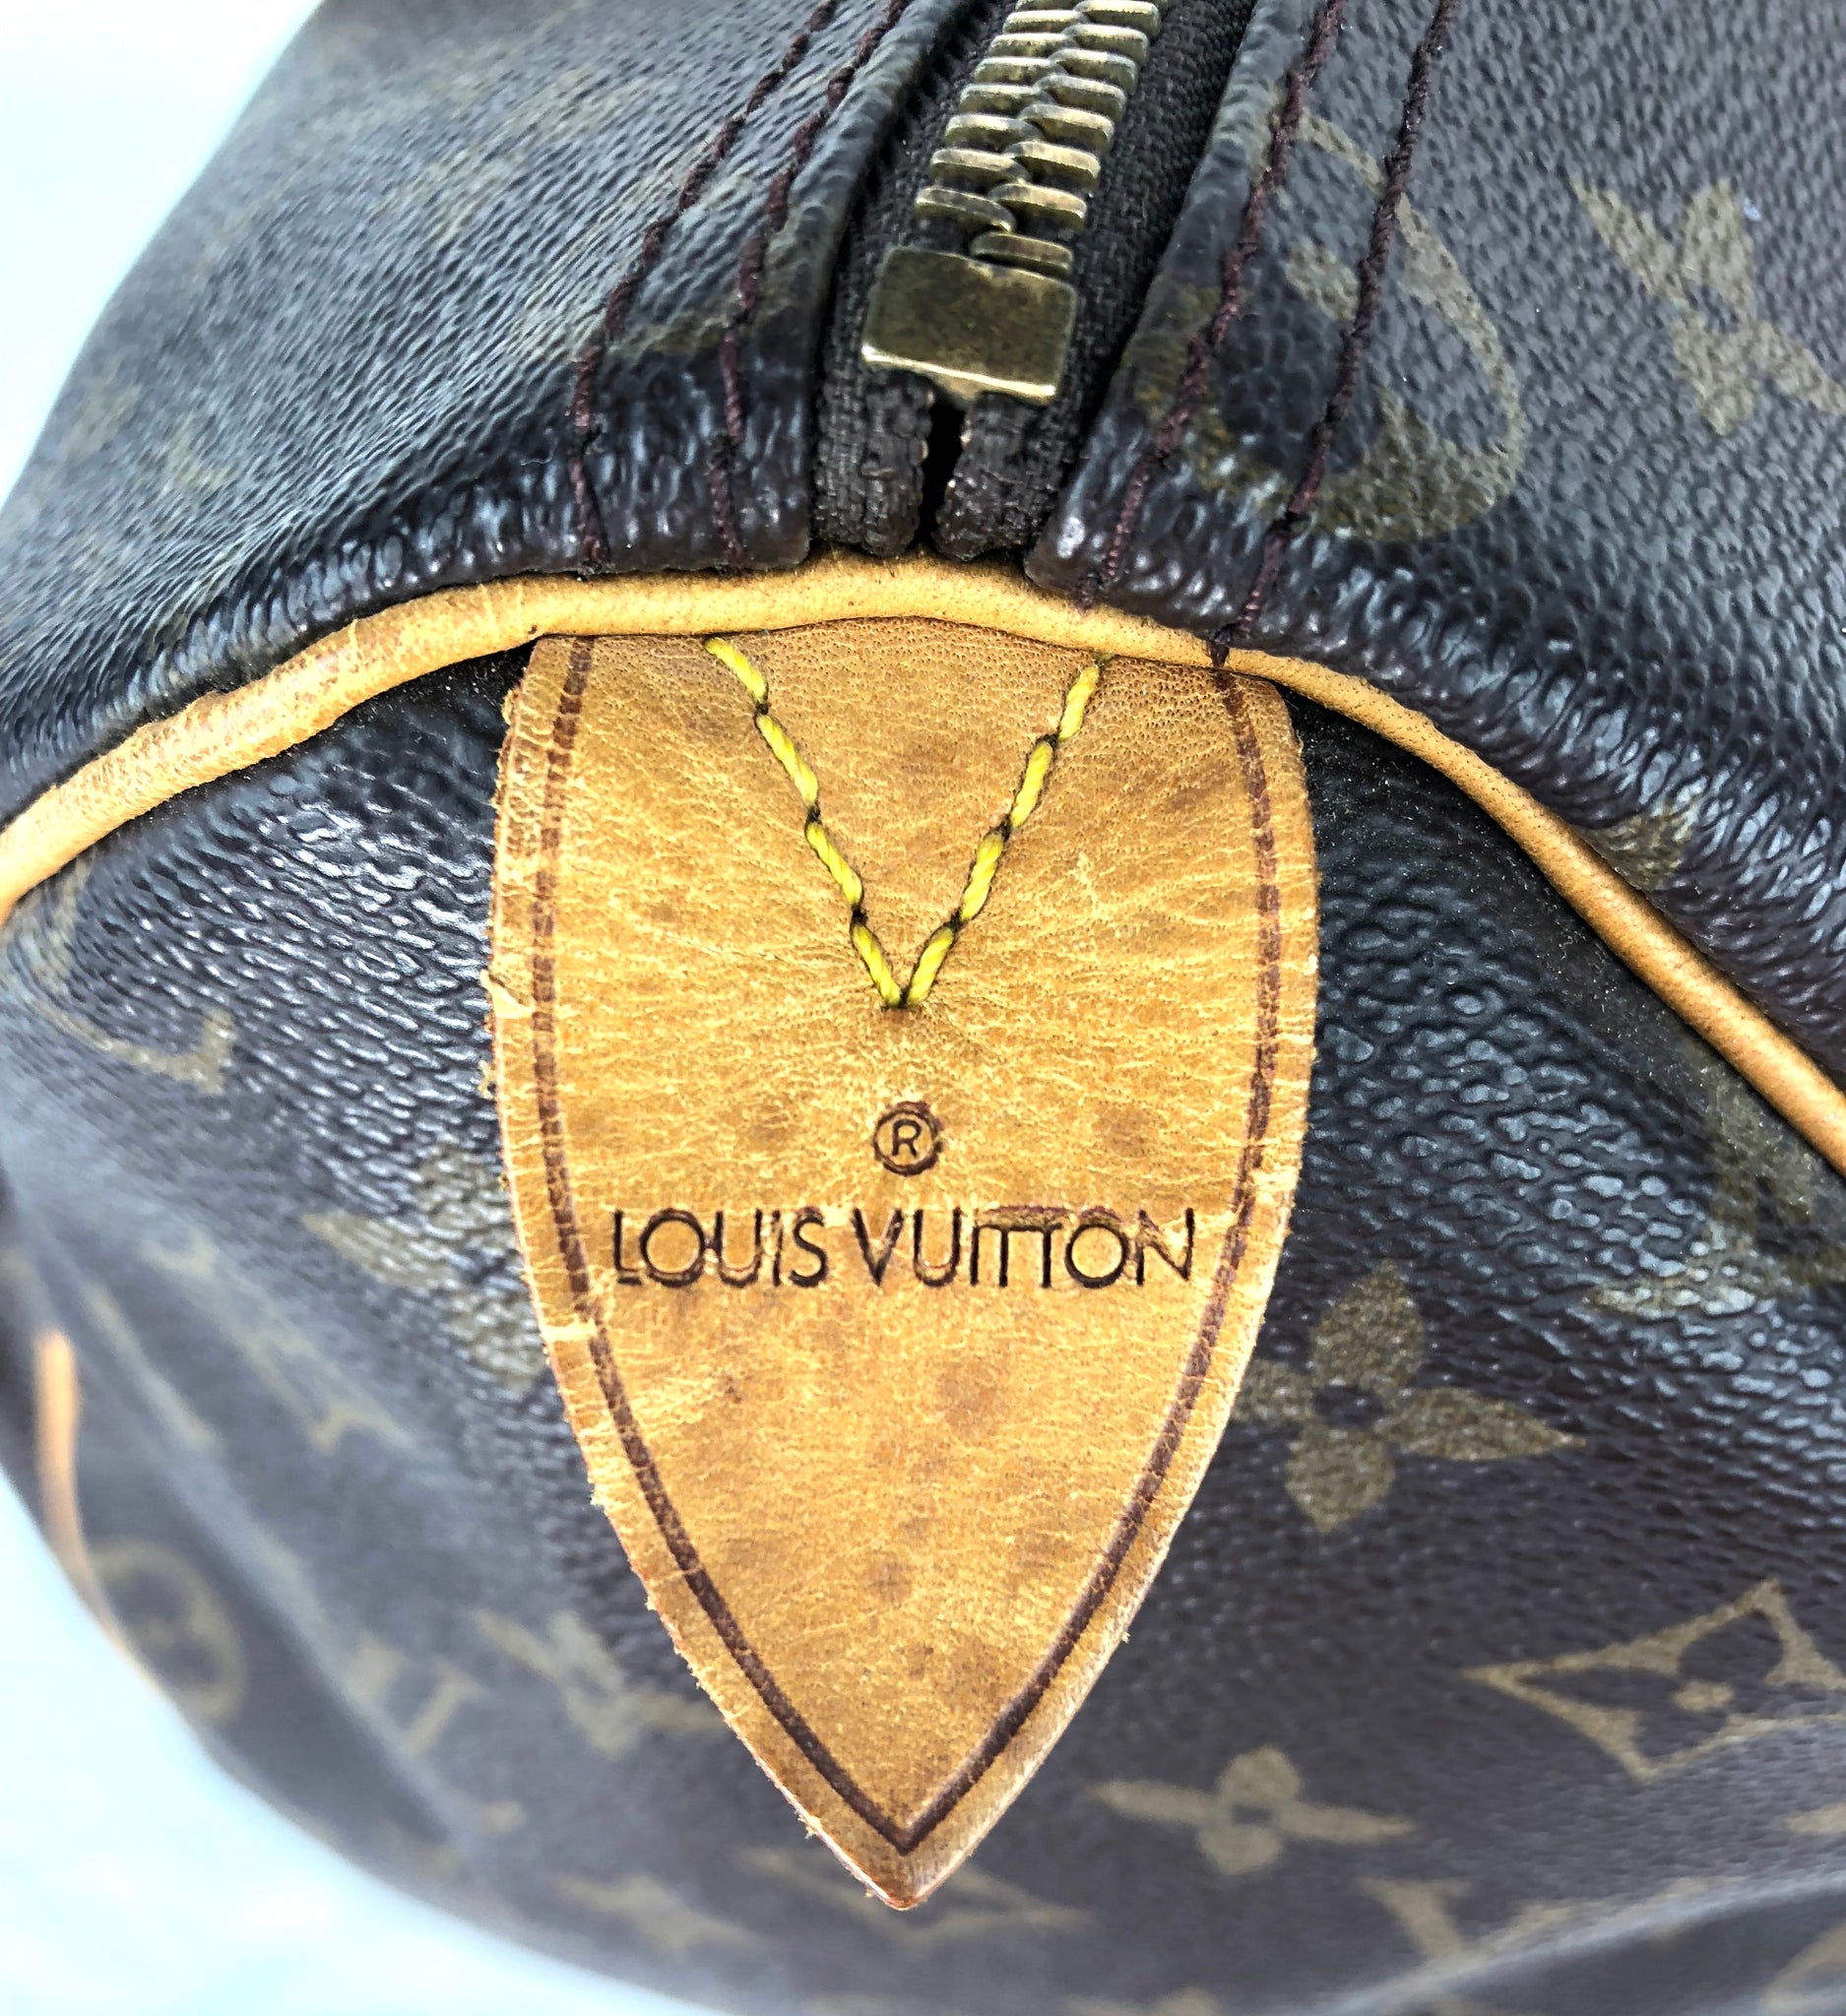 Louis Vuitton (Gently Loved) Speedy 35 - Bertie & Olif Boutique